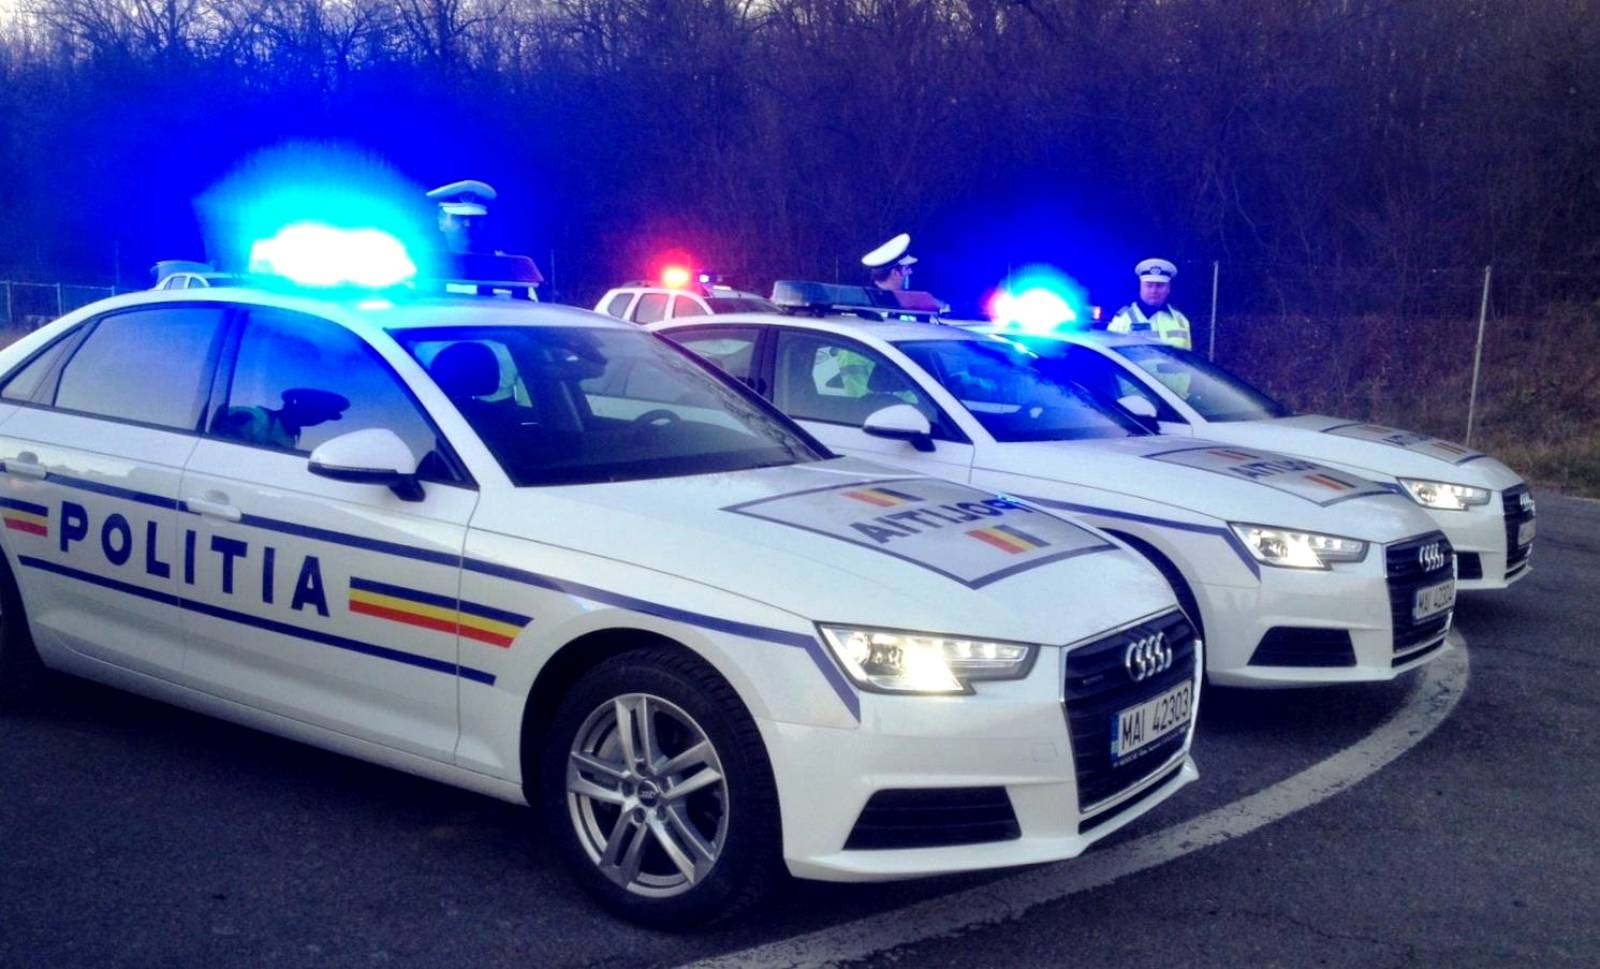 Det rumænske politi beskadigede bilen